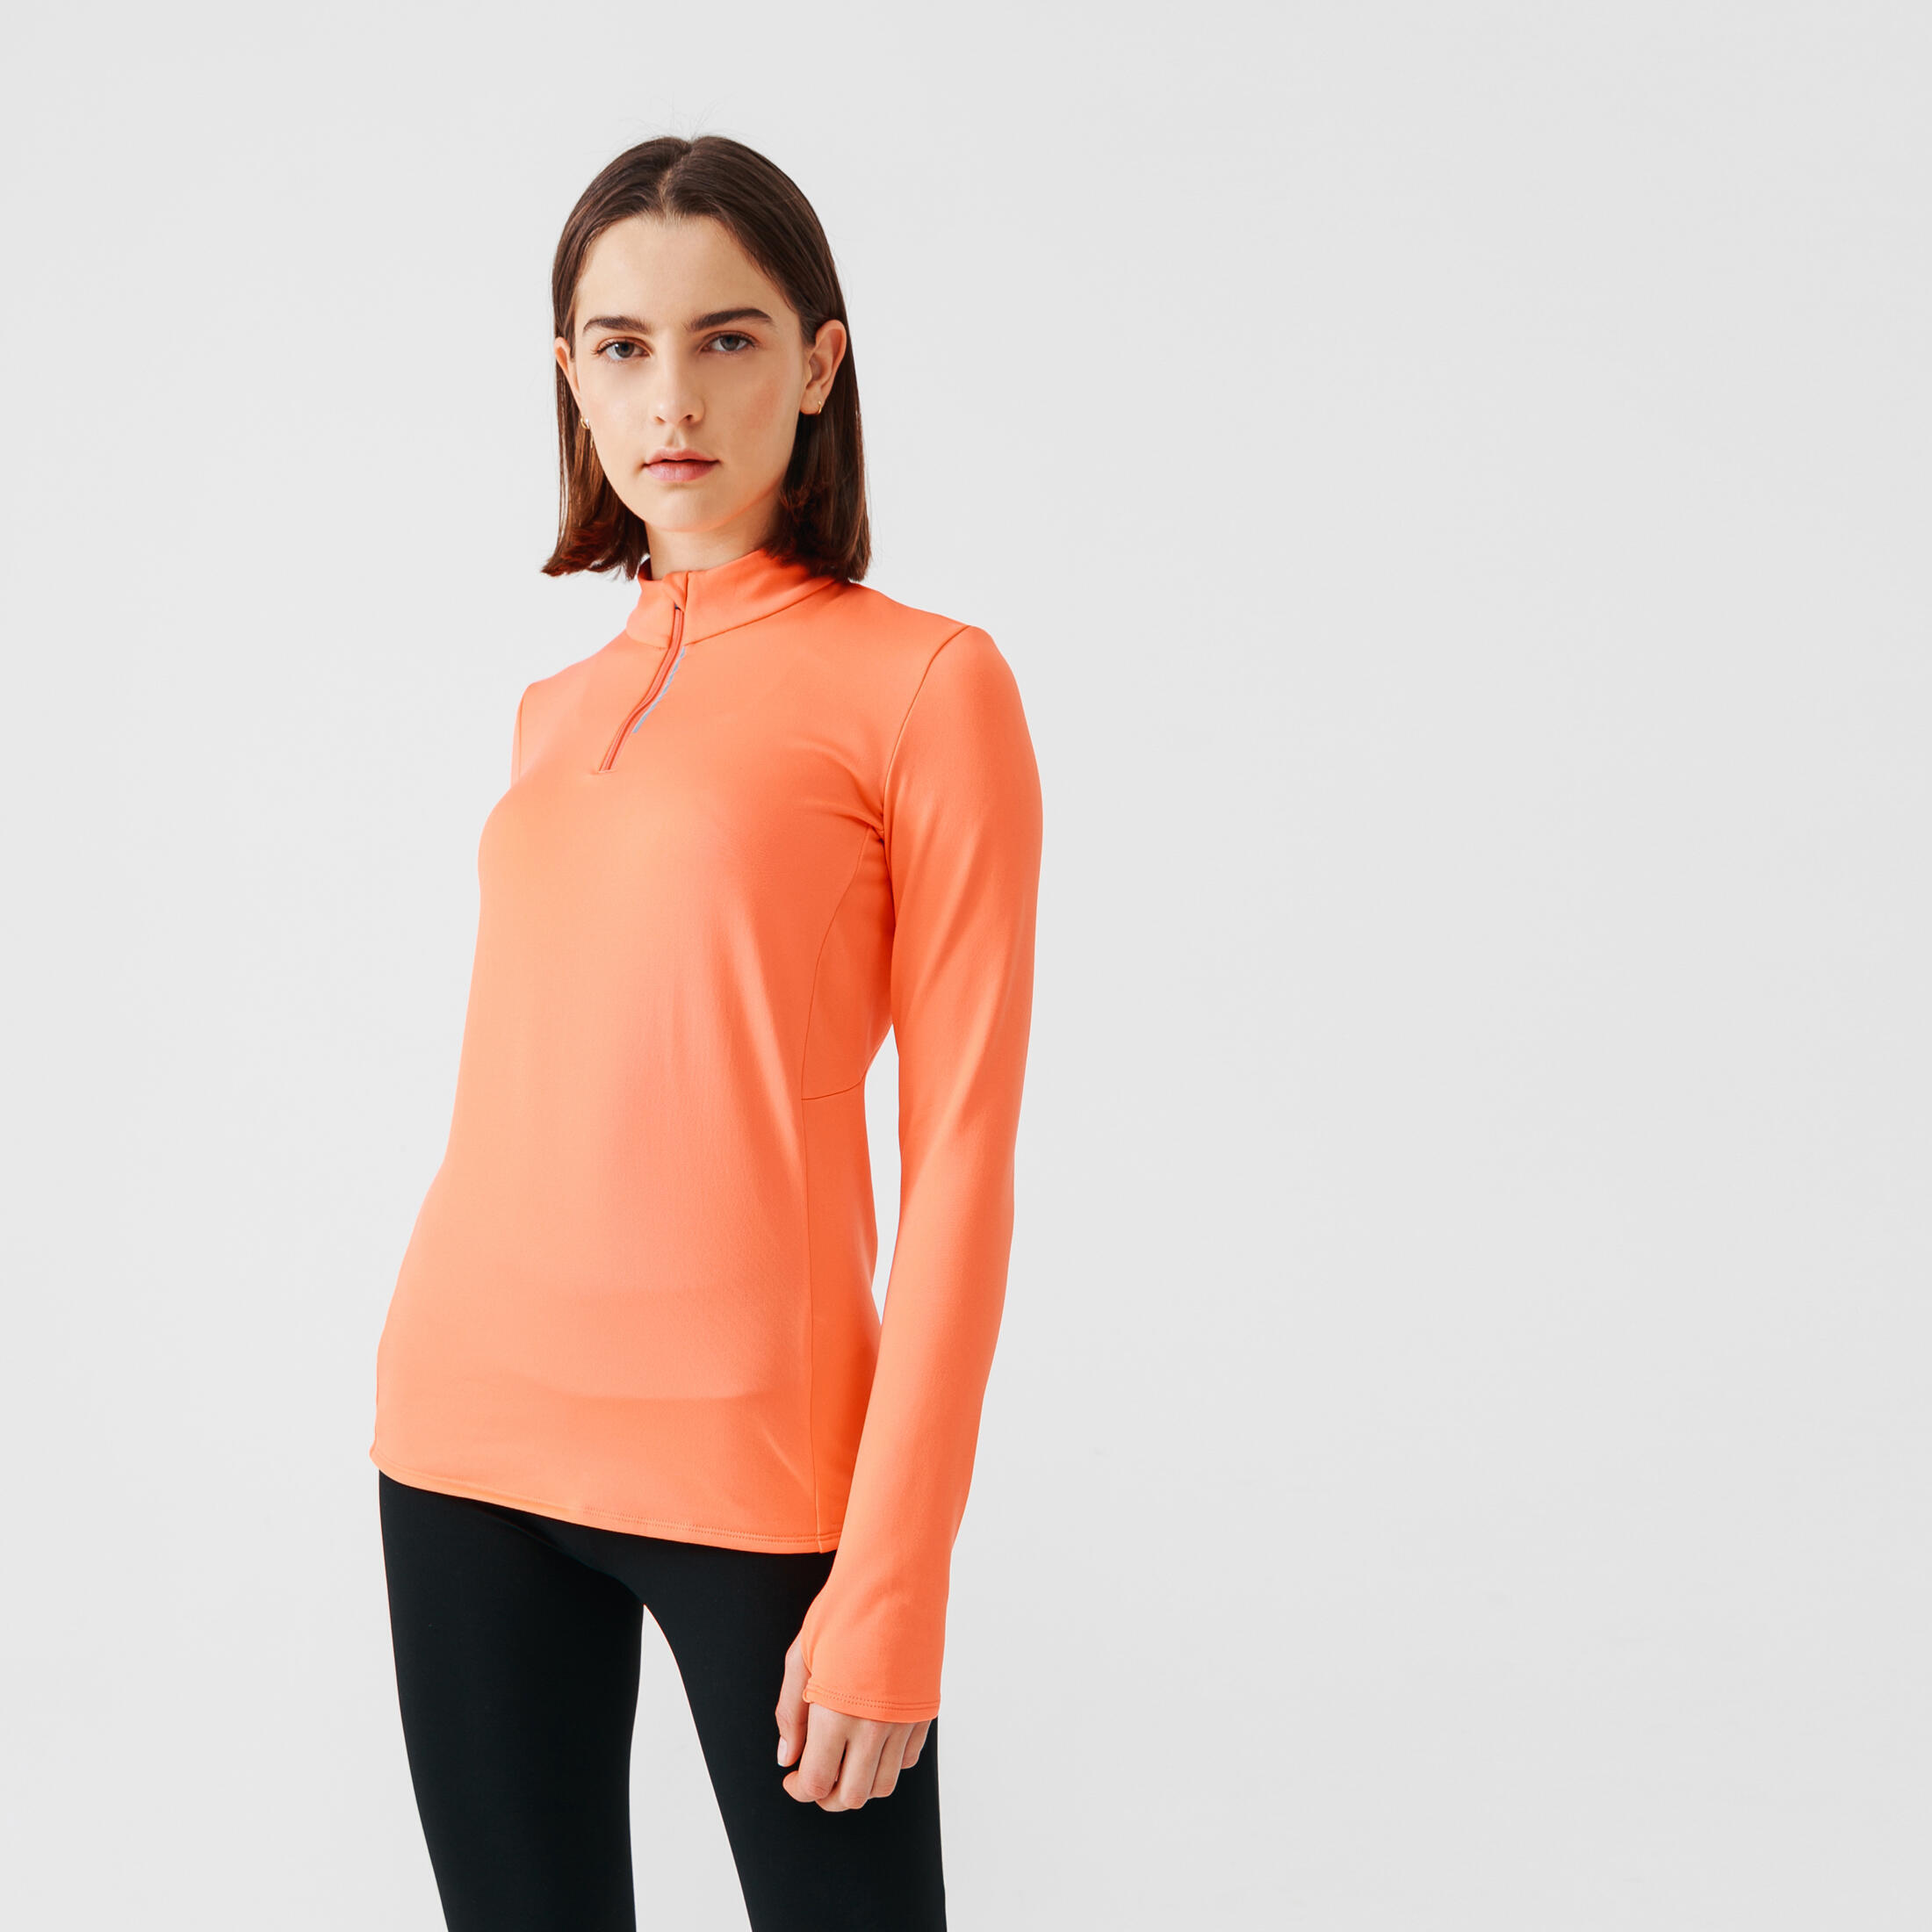 Zip Warm women's long-sleeved running T-shirt - coral 2/9